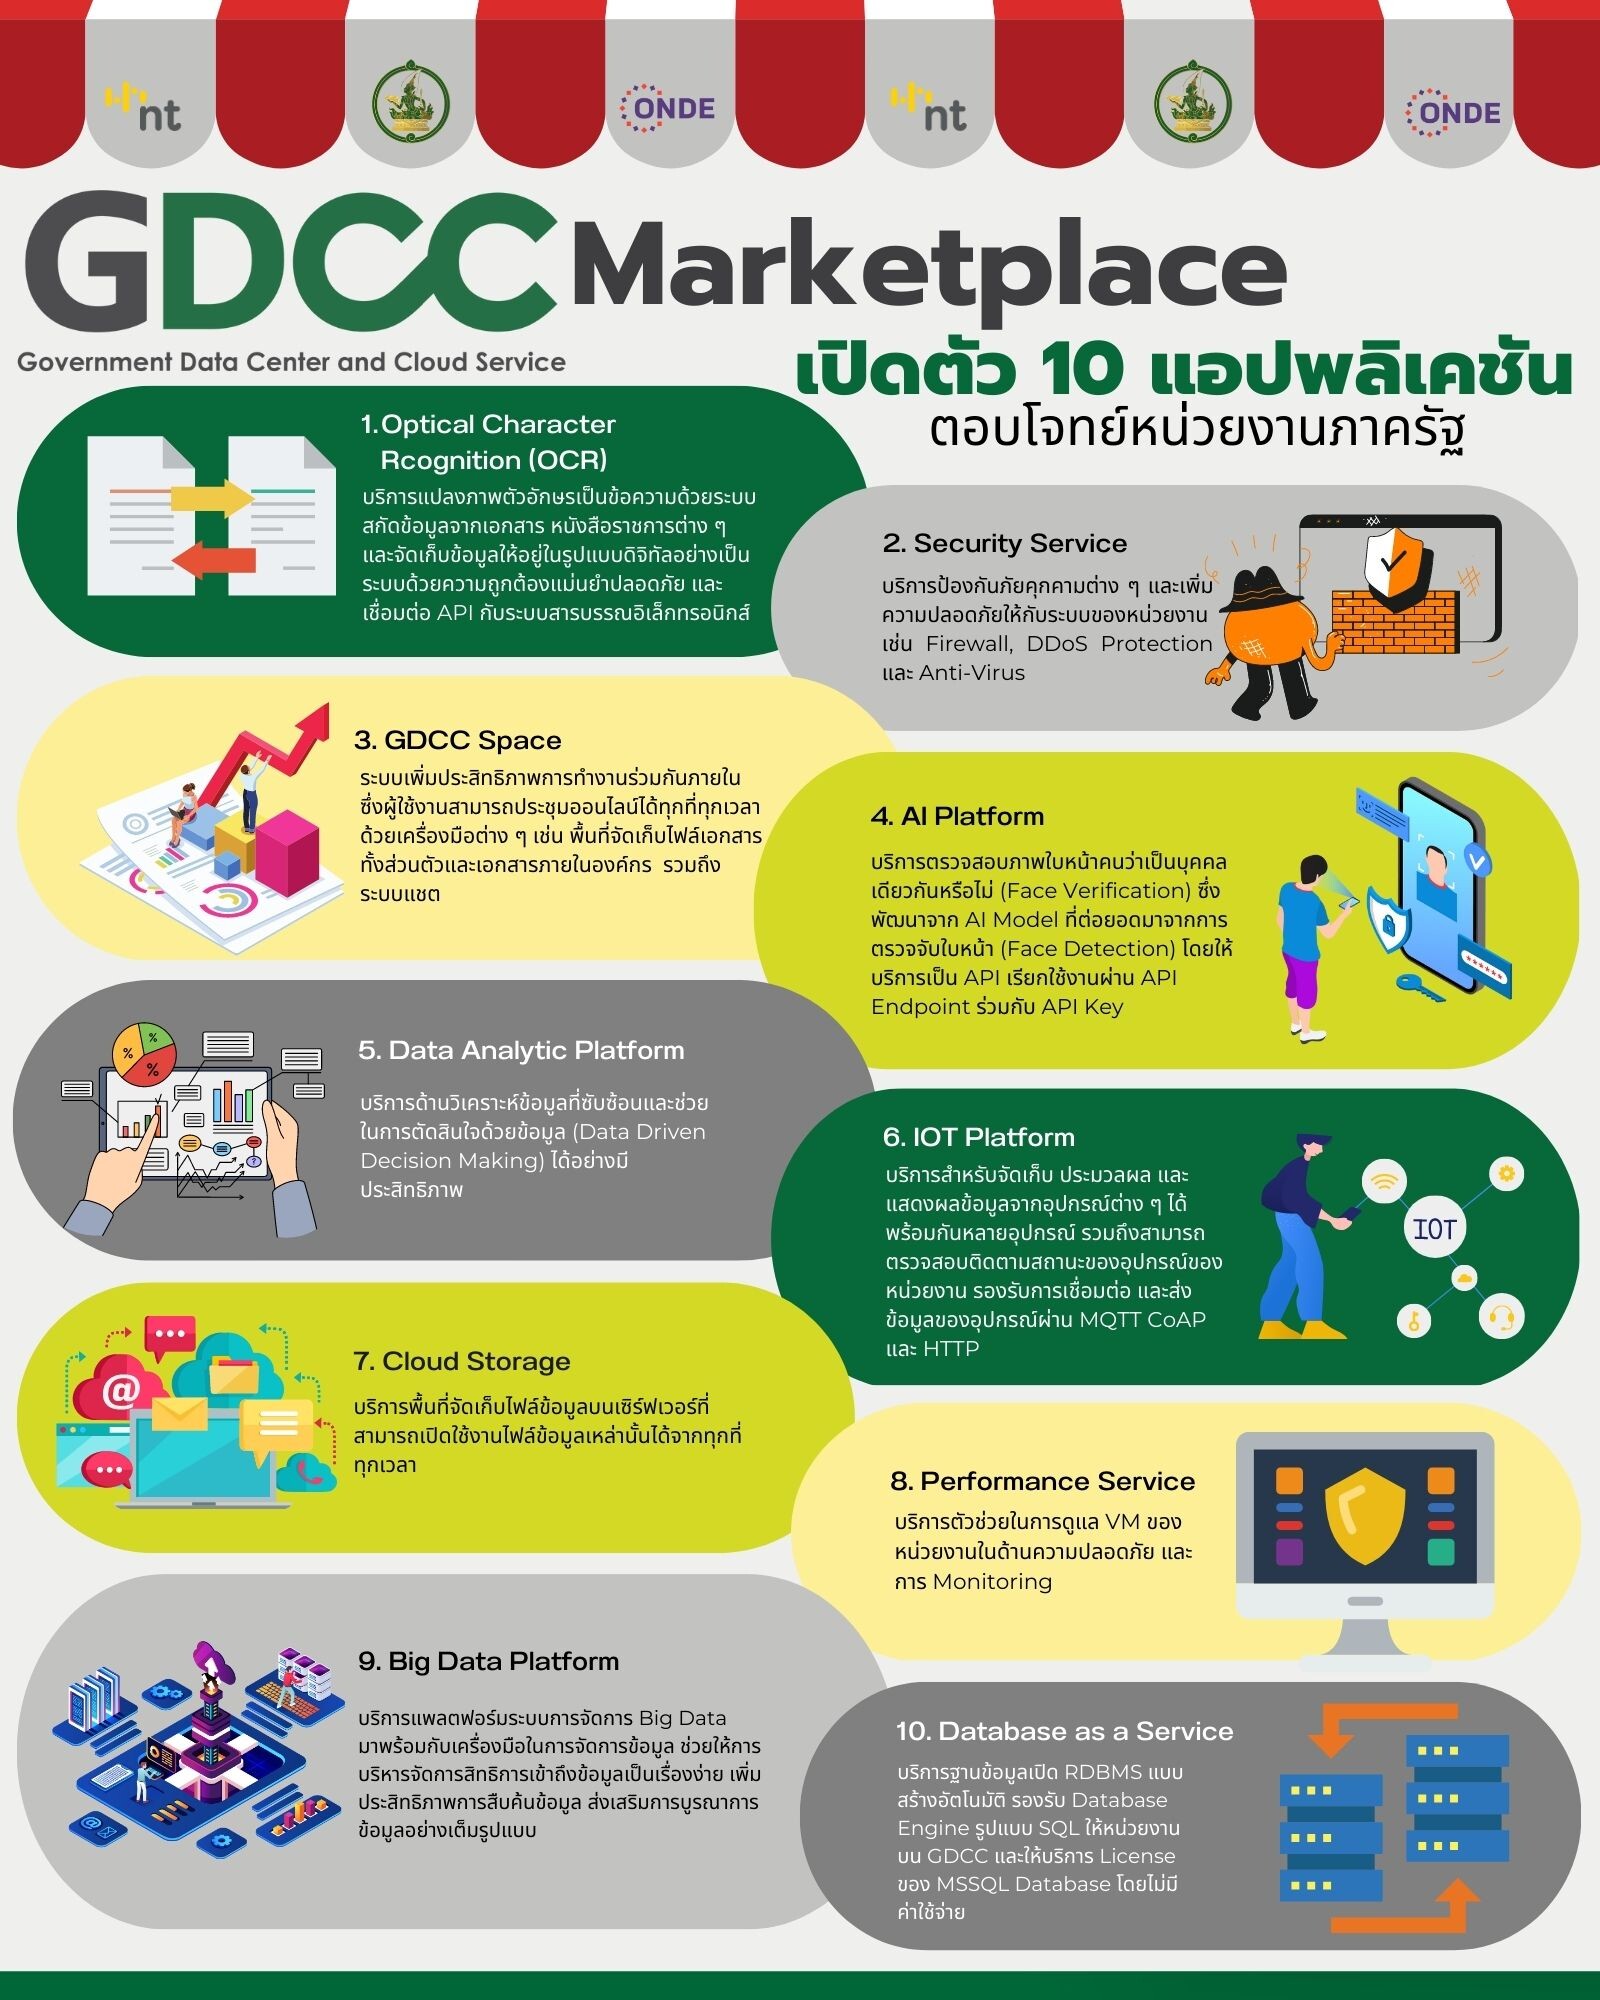 สดช.ยกระดับคลาวด์กลางภาครัฐ GDCC เปิด Marketplace รวมบริการแพลตฟอร์มและแอปพลิเคชันเพื่อภาครัฐ